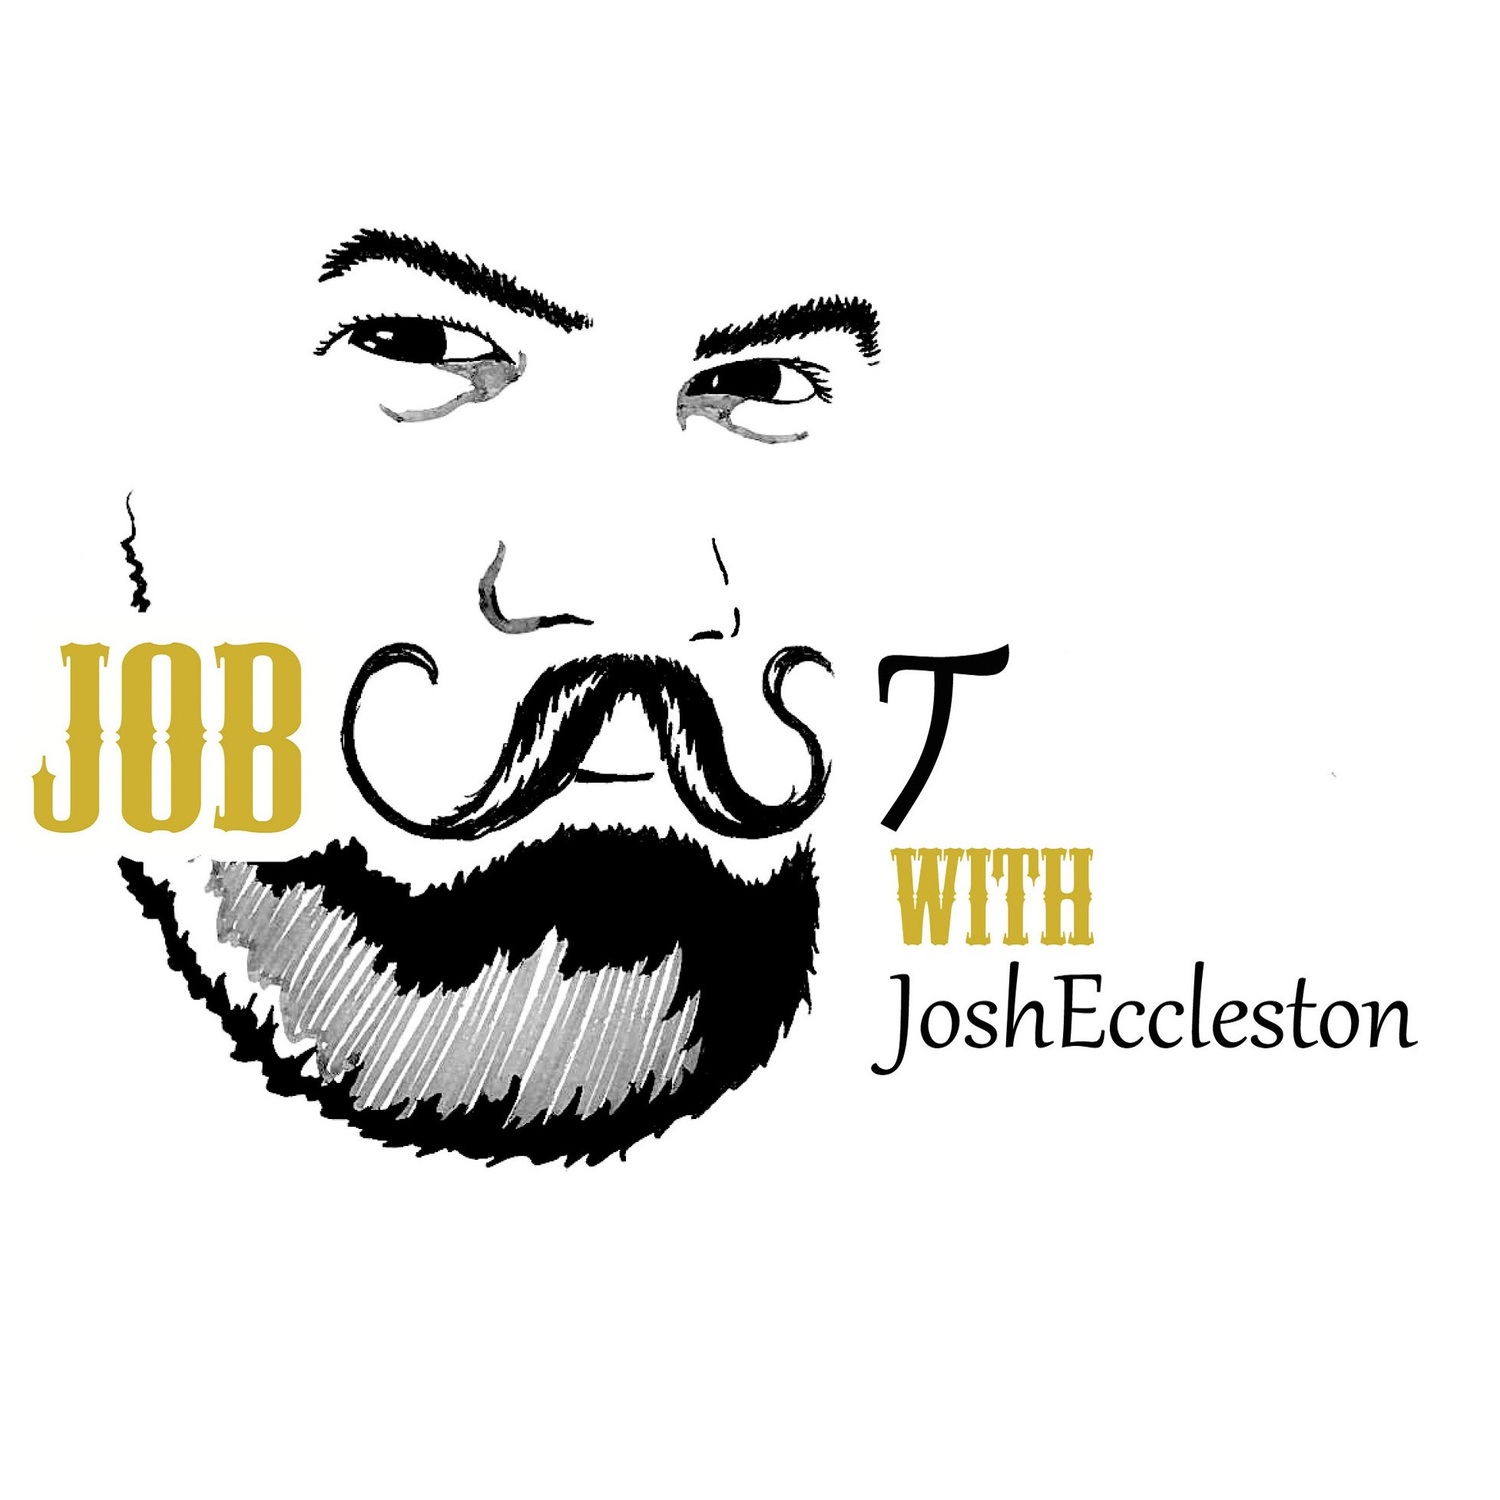 Jobcast Episodes - Couchcast Collective